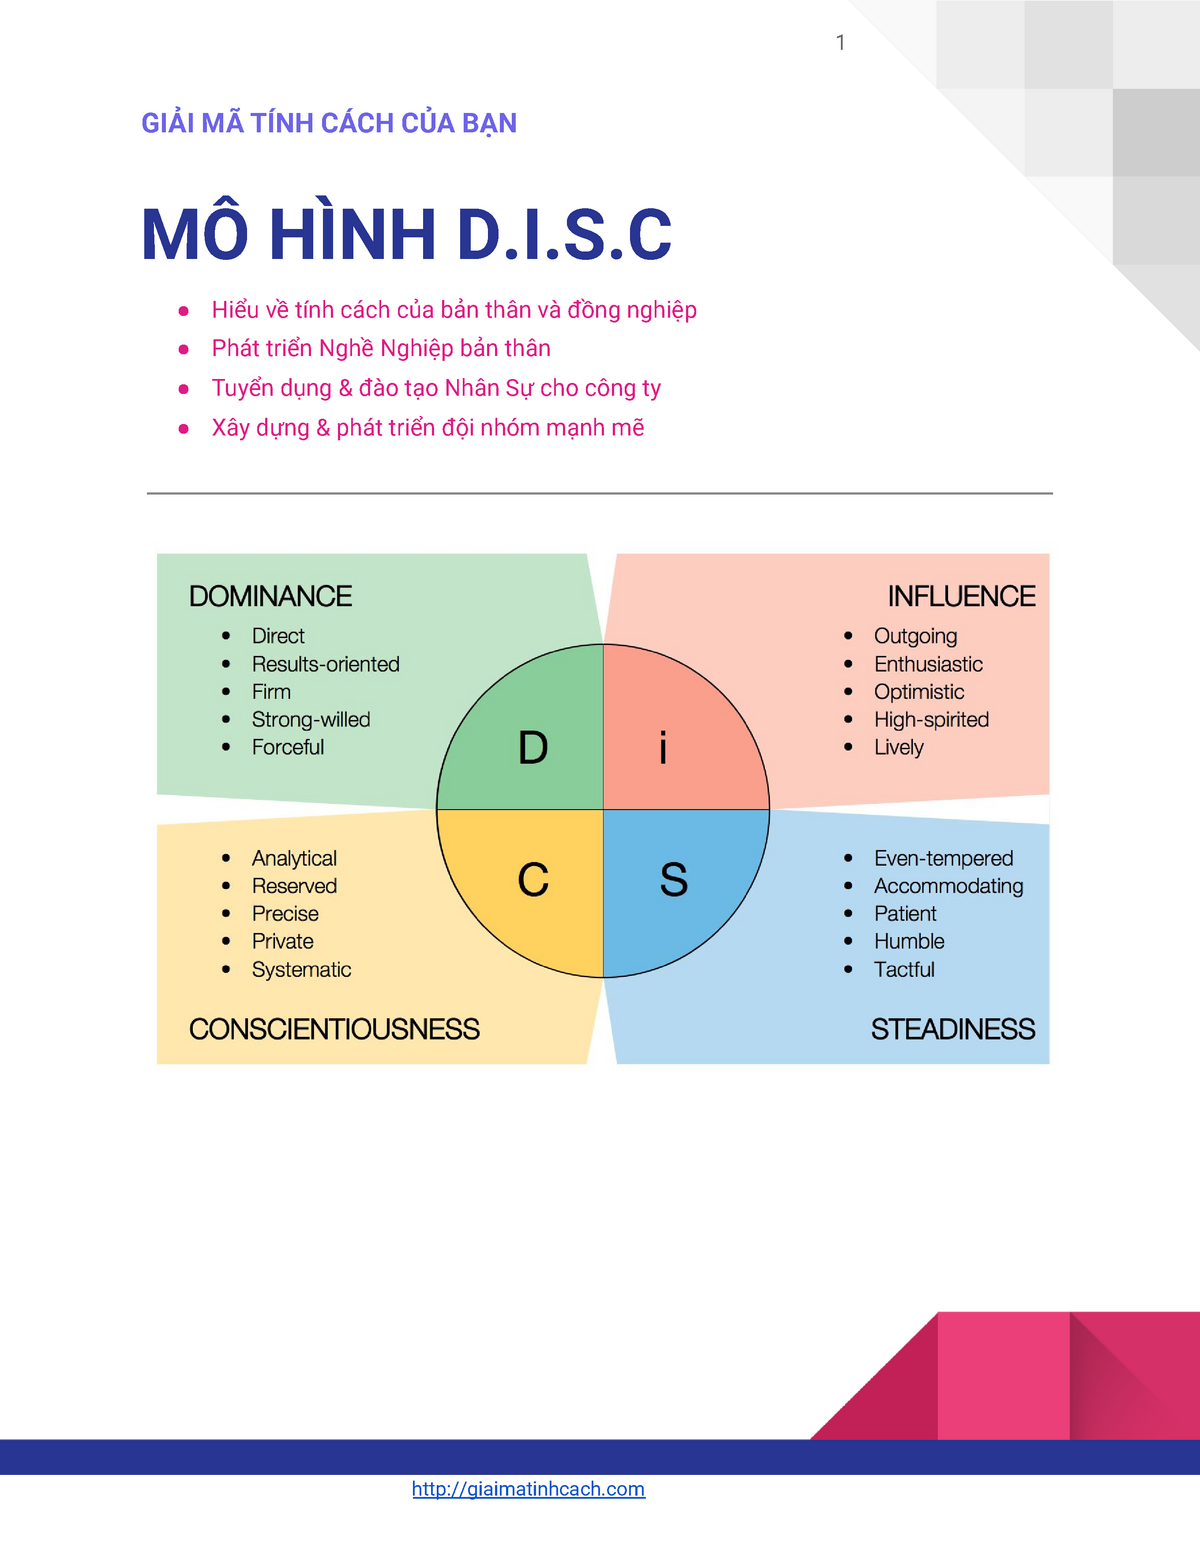 DISC là gì Ứng dụng 4 nhóm tính cách trong kinh doanh và bán hàng